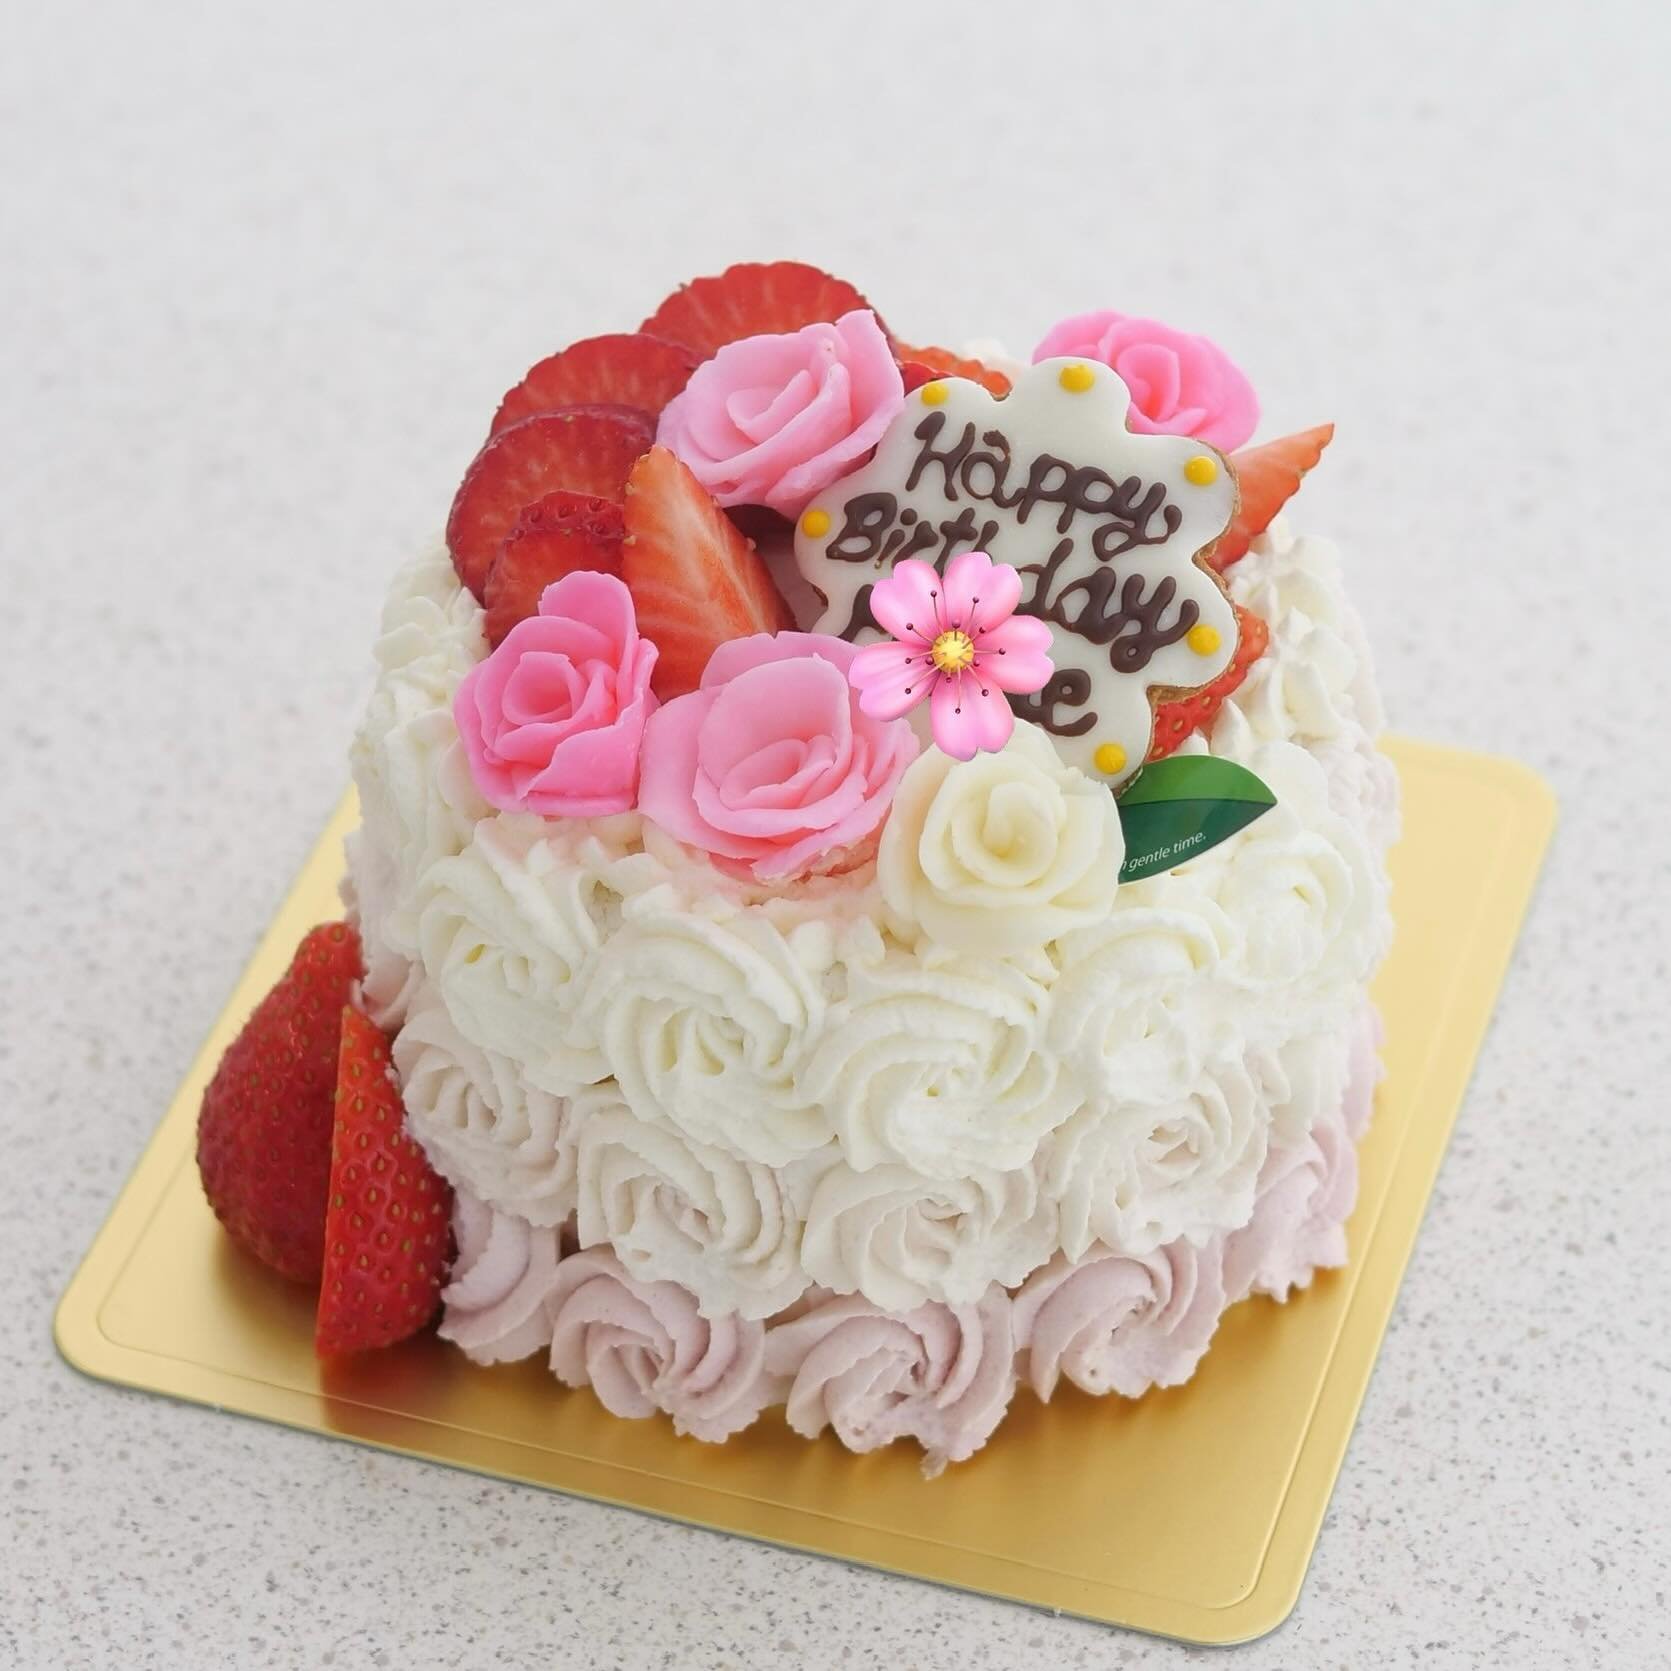 3号サイズいちごとバラのデコレーションケーキ🌹

happy birthday 🎉

3号サイズからデコレーションケーキを作成できます♪

少人数でお召し上がりにぴったりなサイズです❣️

お気軽にお問い合わせくださいね😊
DM 、LINE、ホームページからどうぞ🔗

#Patisserie301 #P301 #パティスリー301 #Japan #龍ケ崎 #牛久 #つくば #つくばみらい市 #阿見 #取手 #印西市 #Cake #Sweets #ケーキ #お菓子教室 #School  #